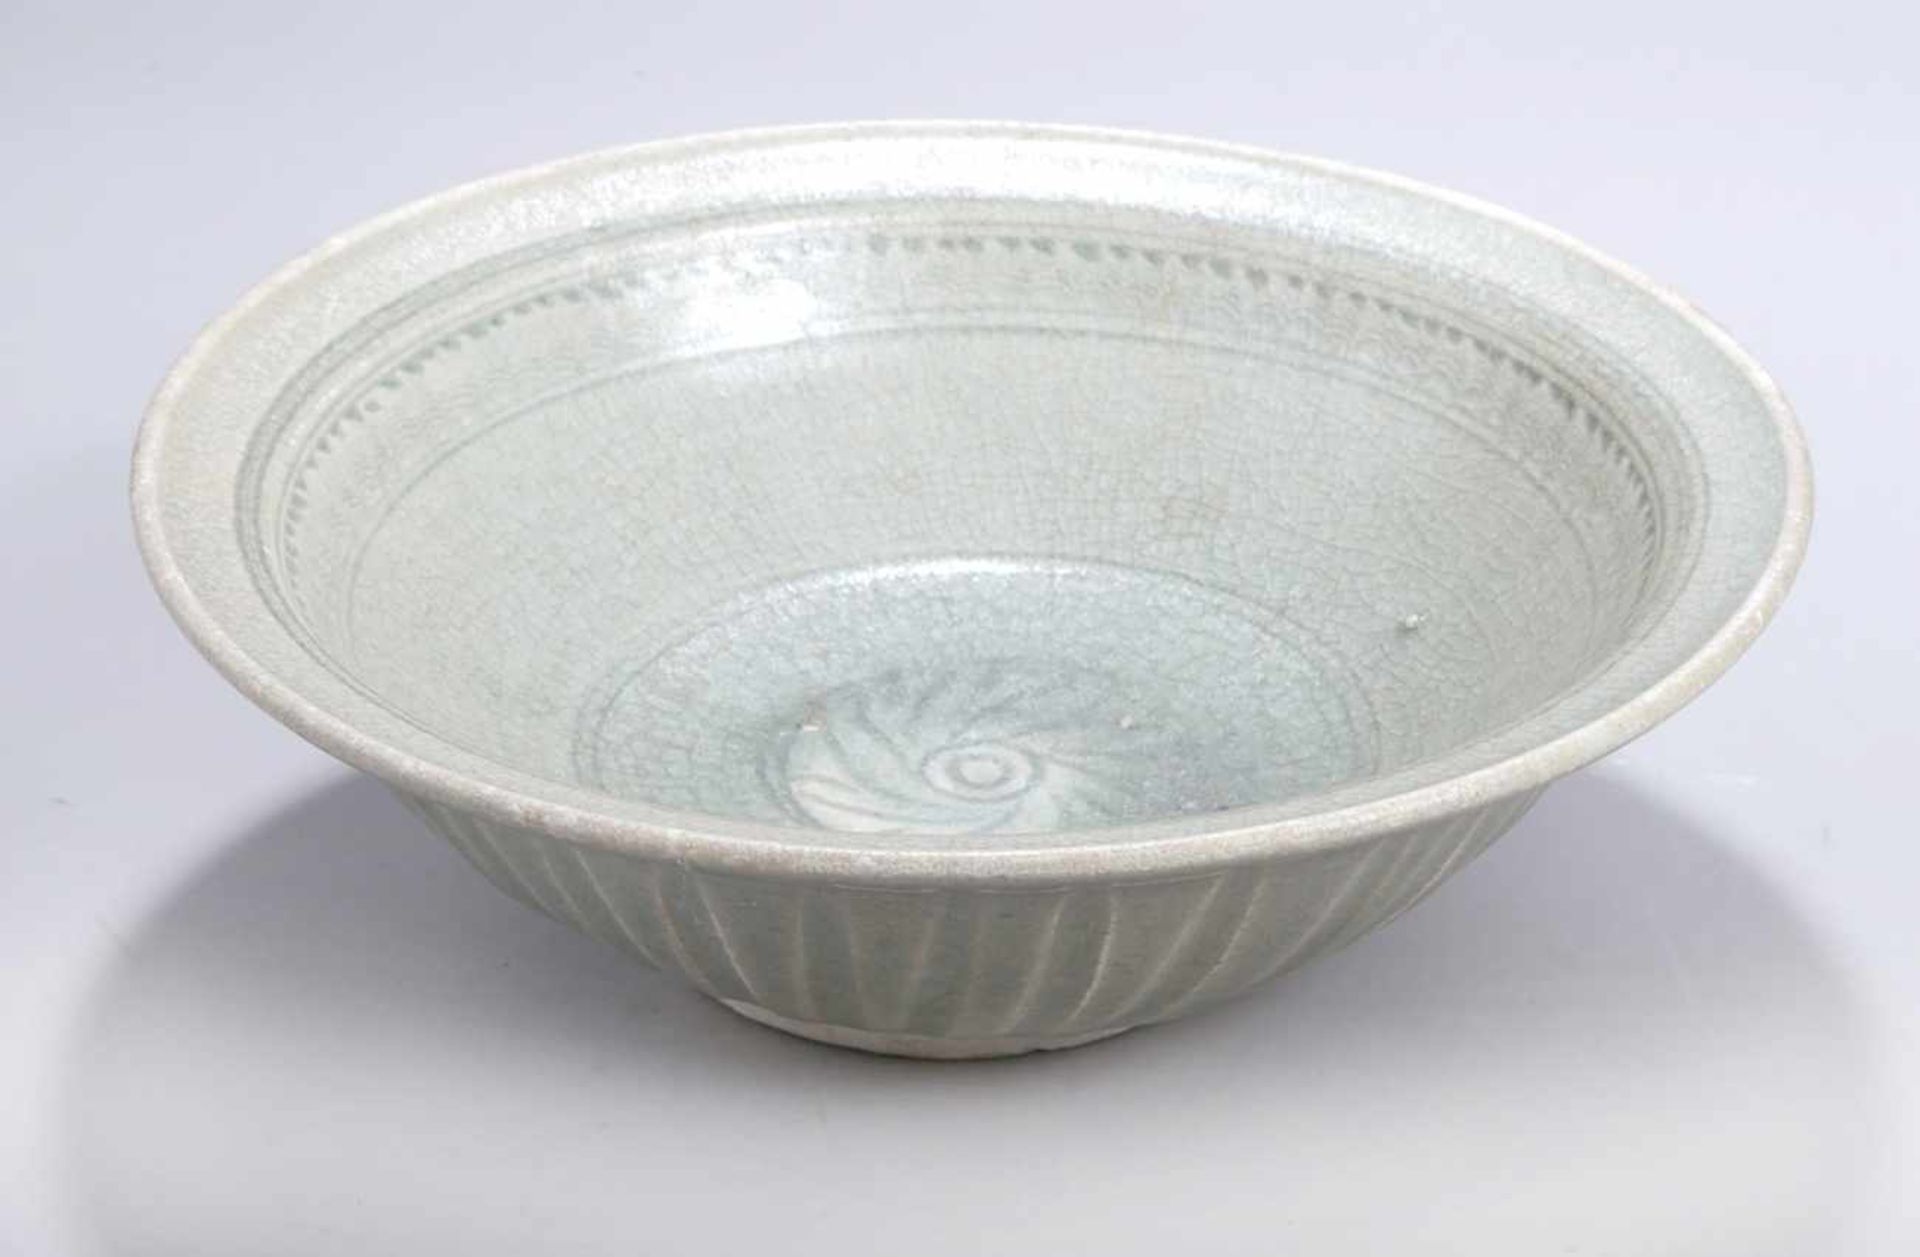 Keramik-Zierschale, Asien, wohl 19. Jh. oder früher, evtl. Schiffswrackfund, runder Stand,halbk